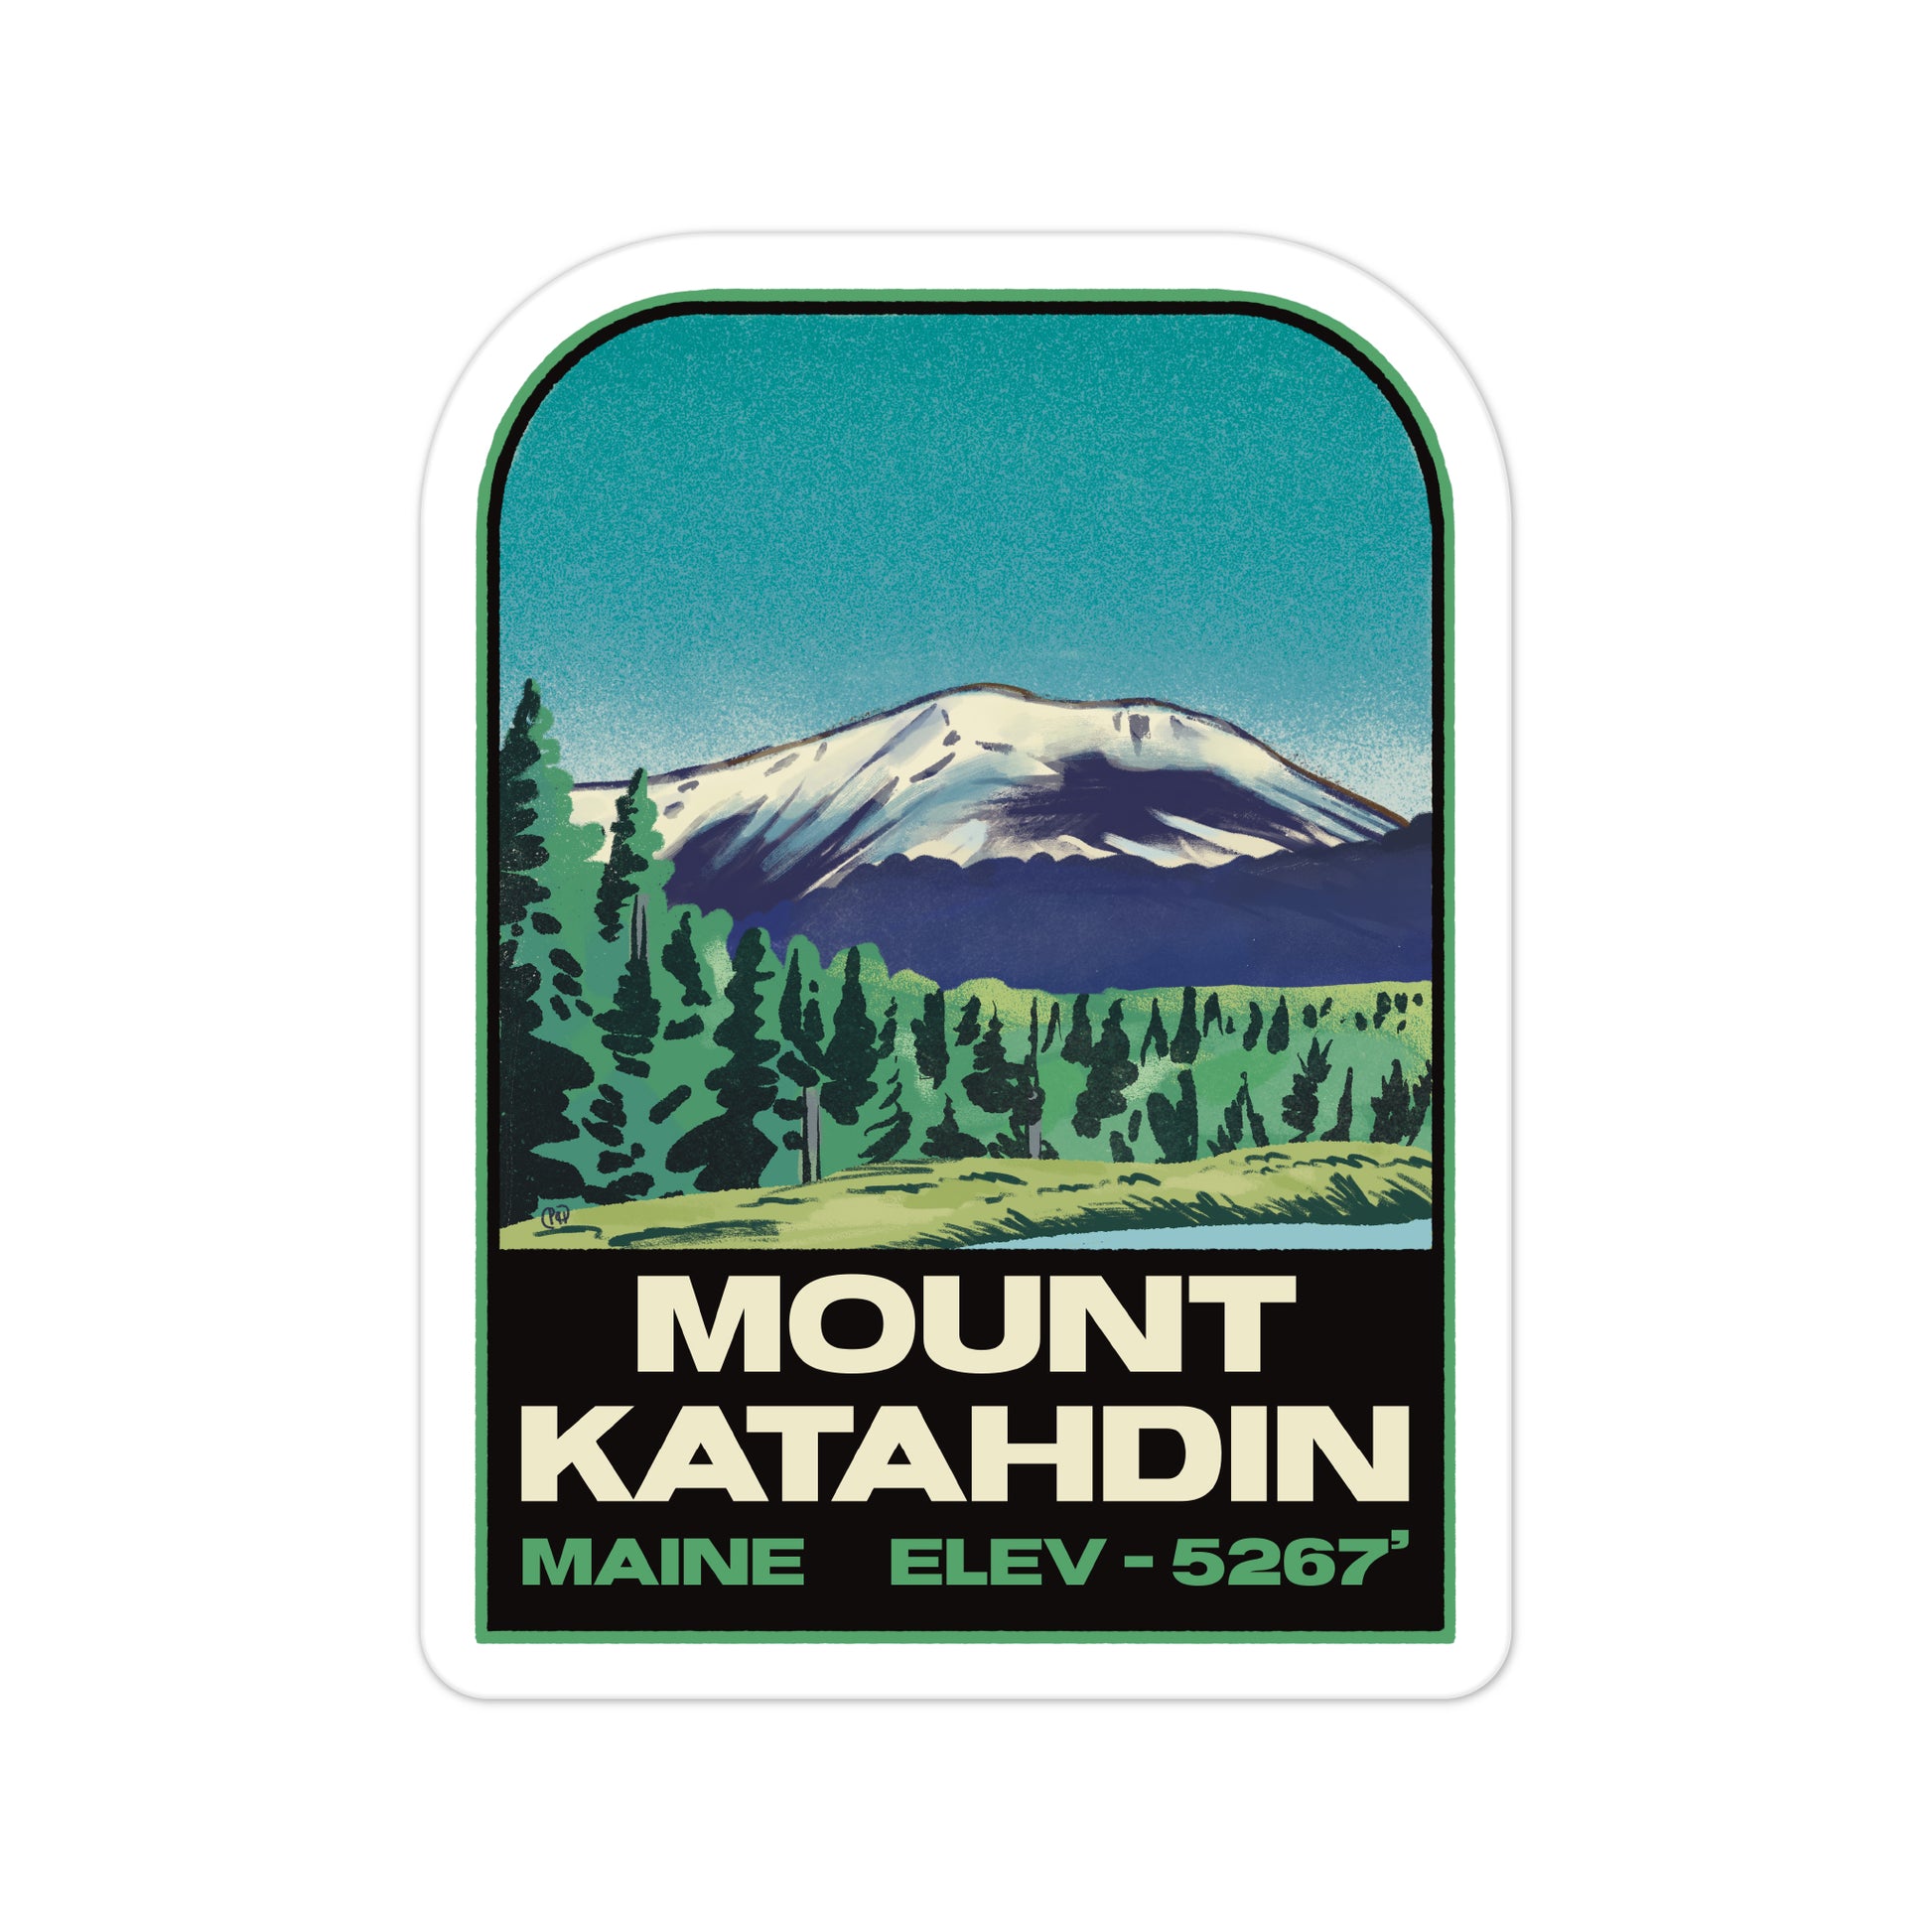 A sticker of Mount Katahdin Maine